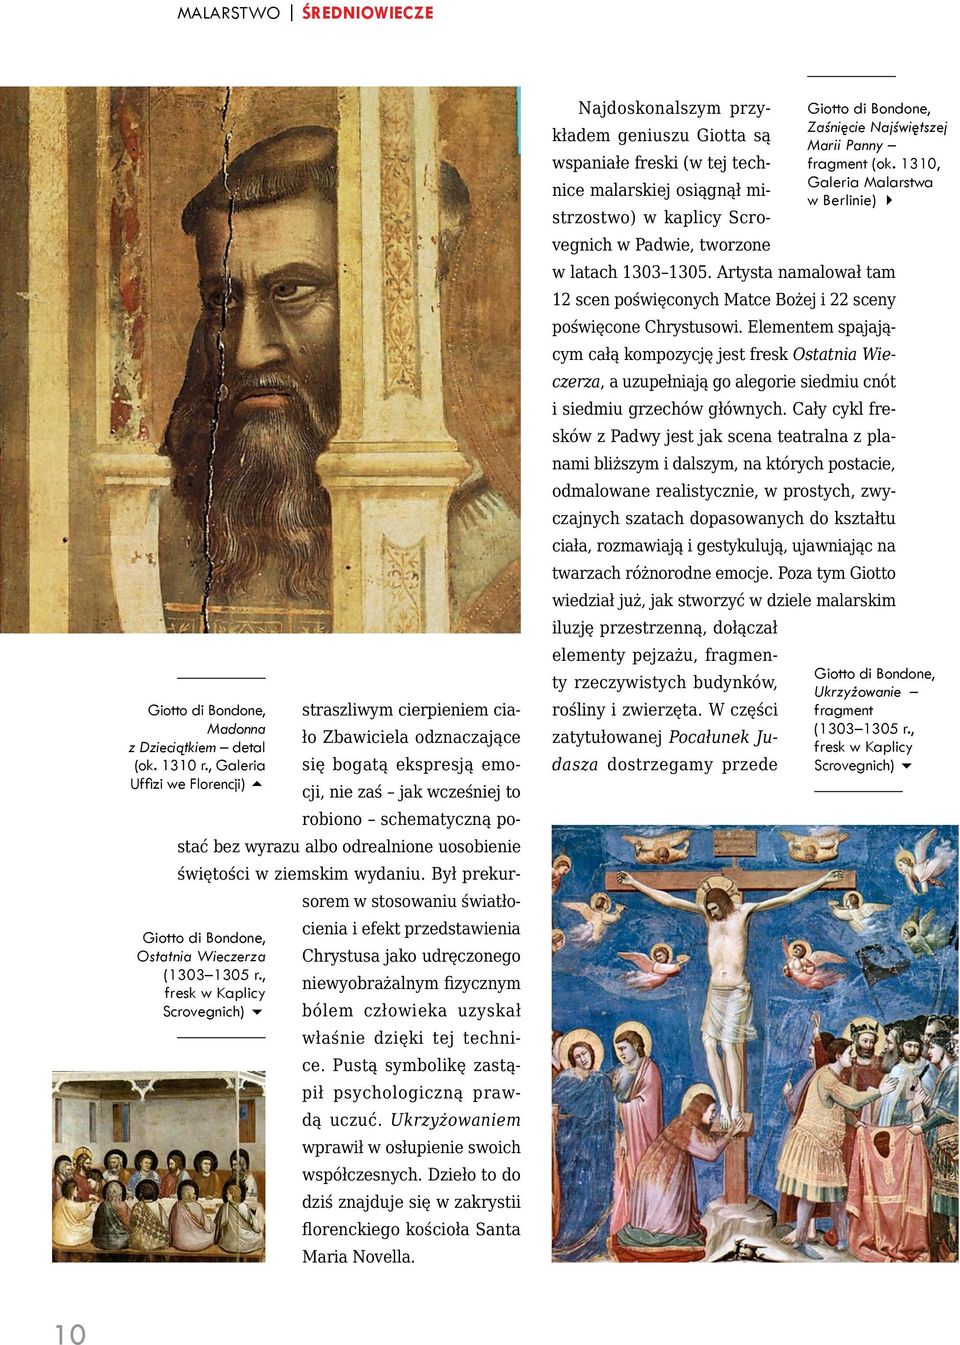 uosobienie Giotto di Bondone, Ostatnia Wieczerza (1303 1305 r., fresk w Kaplicy Scrovegnich) świętości w ziemskim wydaniu.